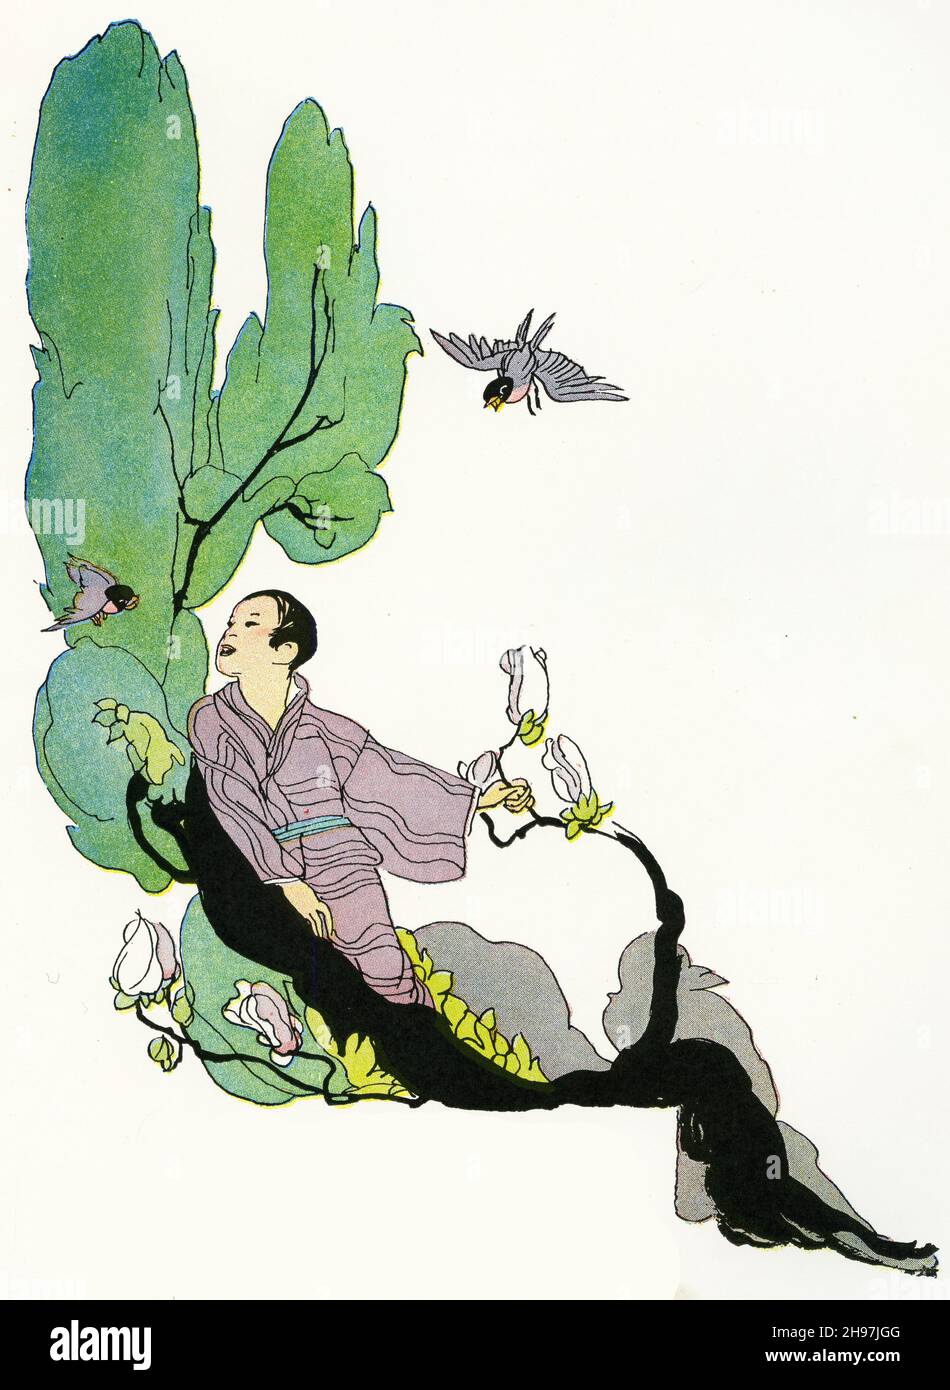 Illustration pittoresque de la vie traditionnelle au Japon, avec un jeune homme nourrissant des oiseaux sous un arbre; publié vers 1928 Banque D'Images